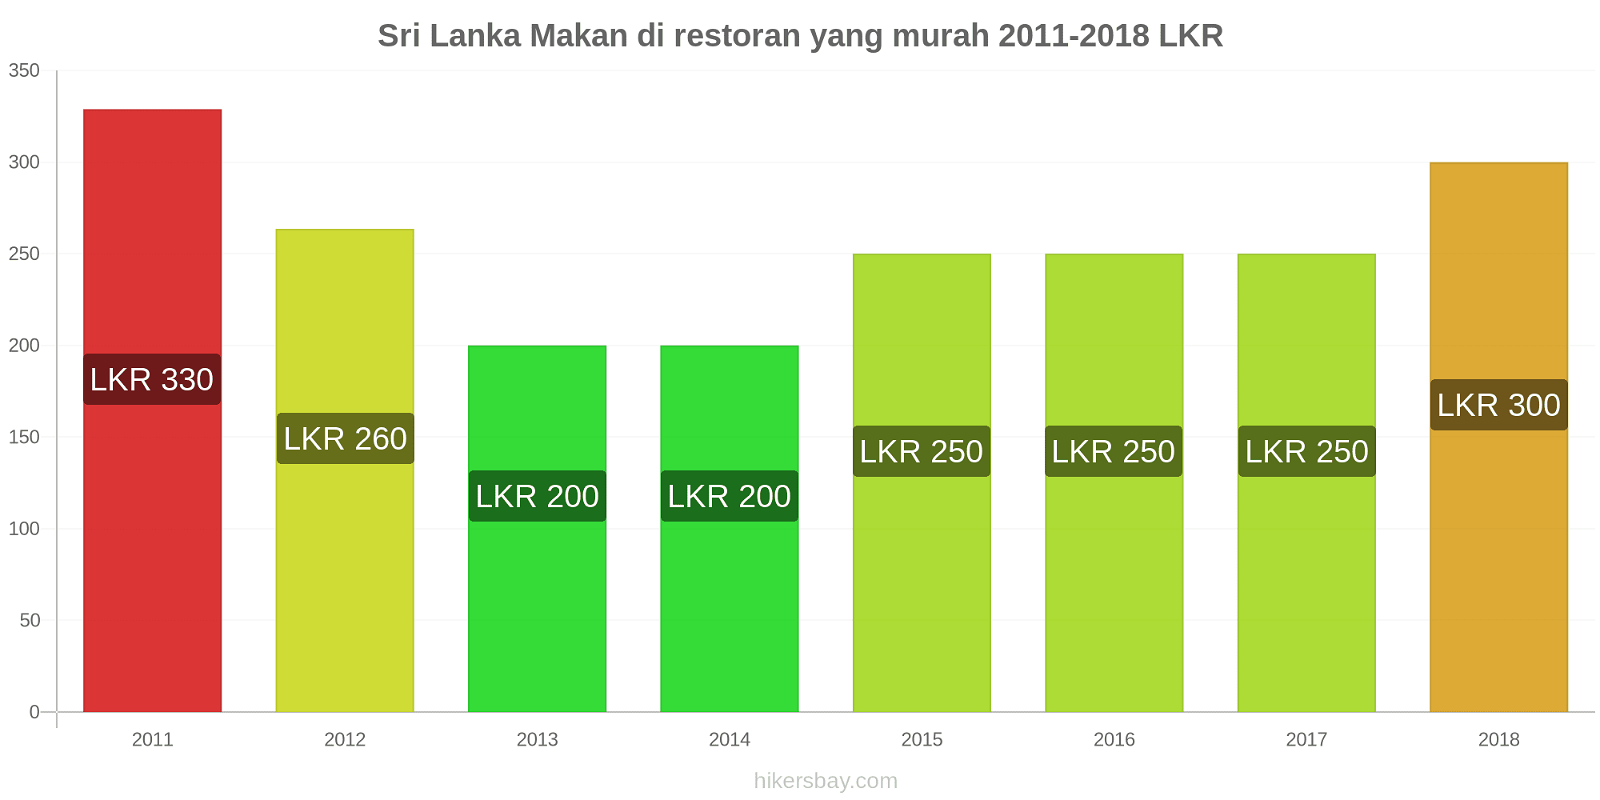 Sri Lanka perubahan harga Makan di restoran yang terjangkau hikersbay.com